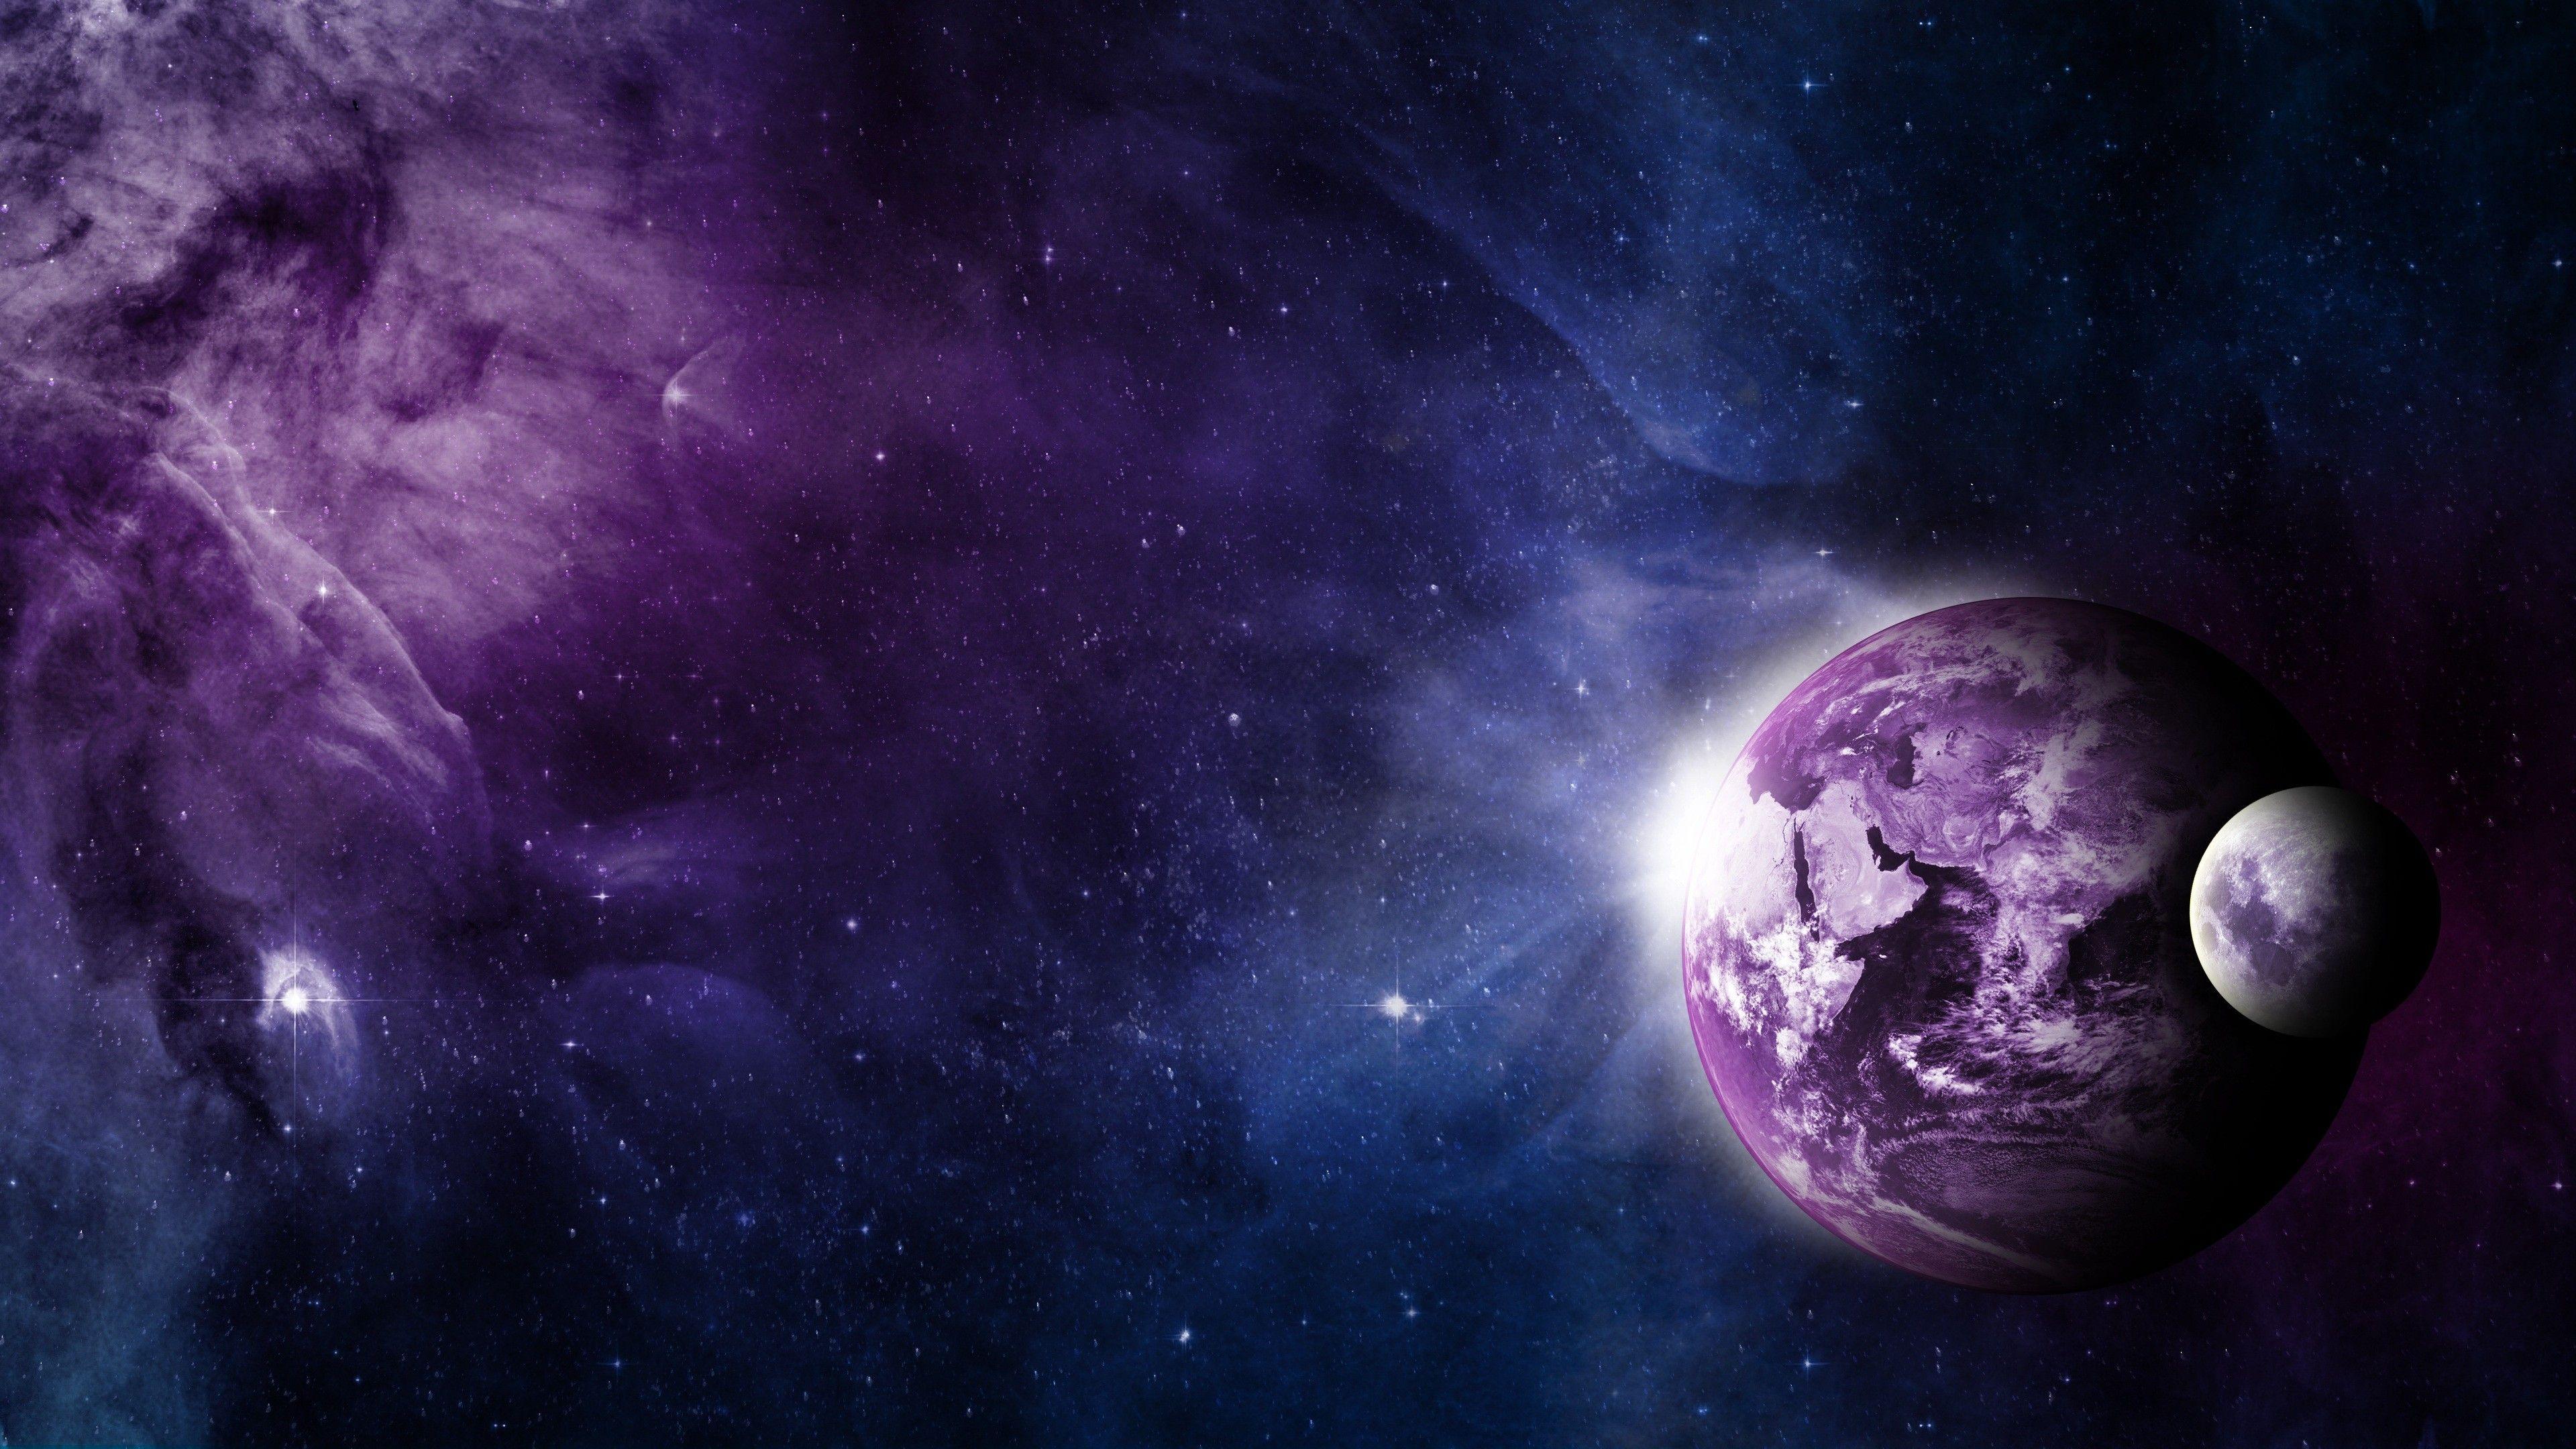 Hình Ảnh Hành Tinh: Trang trí cho máy tính của bạn với bộ sưu tập hình ảnh hành tinh đẹp mắt để tạo ra một môi trường làm việc cực kỳ thú vị. Từ sao Diêm Vương lạnh lẽo đến hành tinh Sao Thủy nóng bỏng, mỗi hình ảnh đều mang đến cho bạn một cảm giác khám phá hệ mặt trời và không gian.